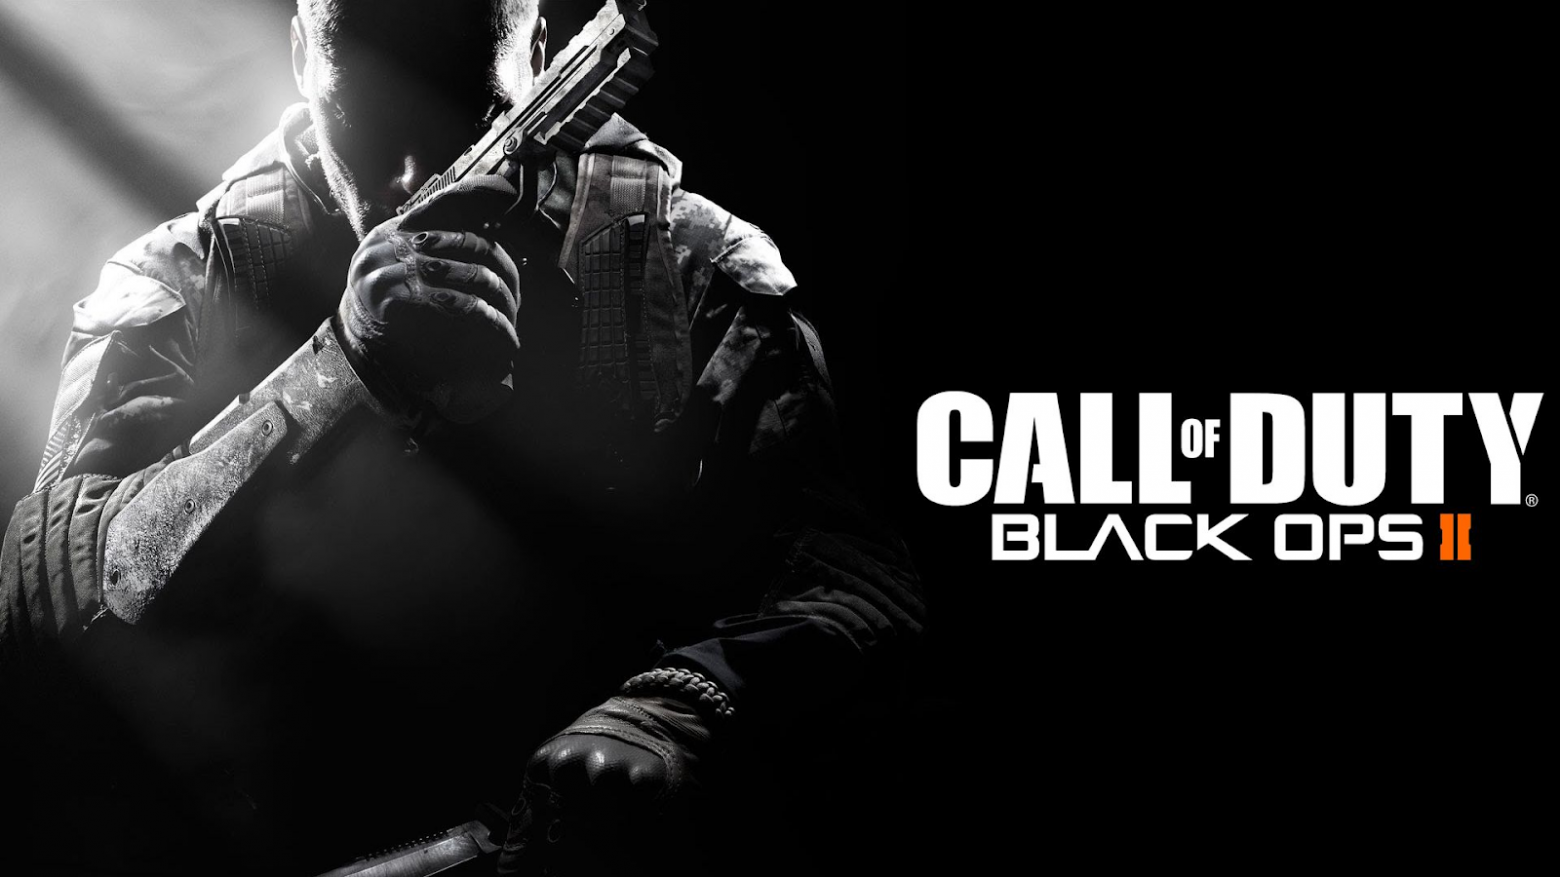 Call of Duty: Black Ops 2 — великолепный сингплеерный шутер от Treyarch